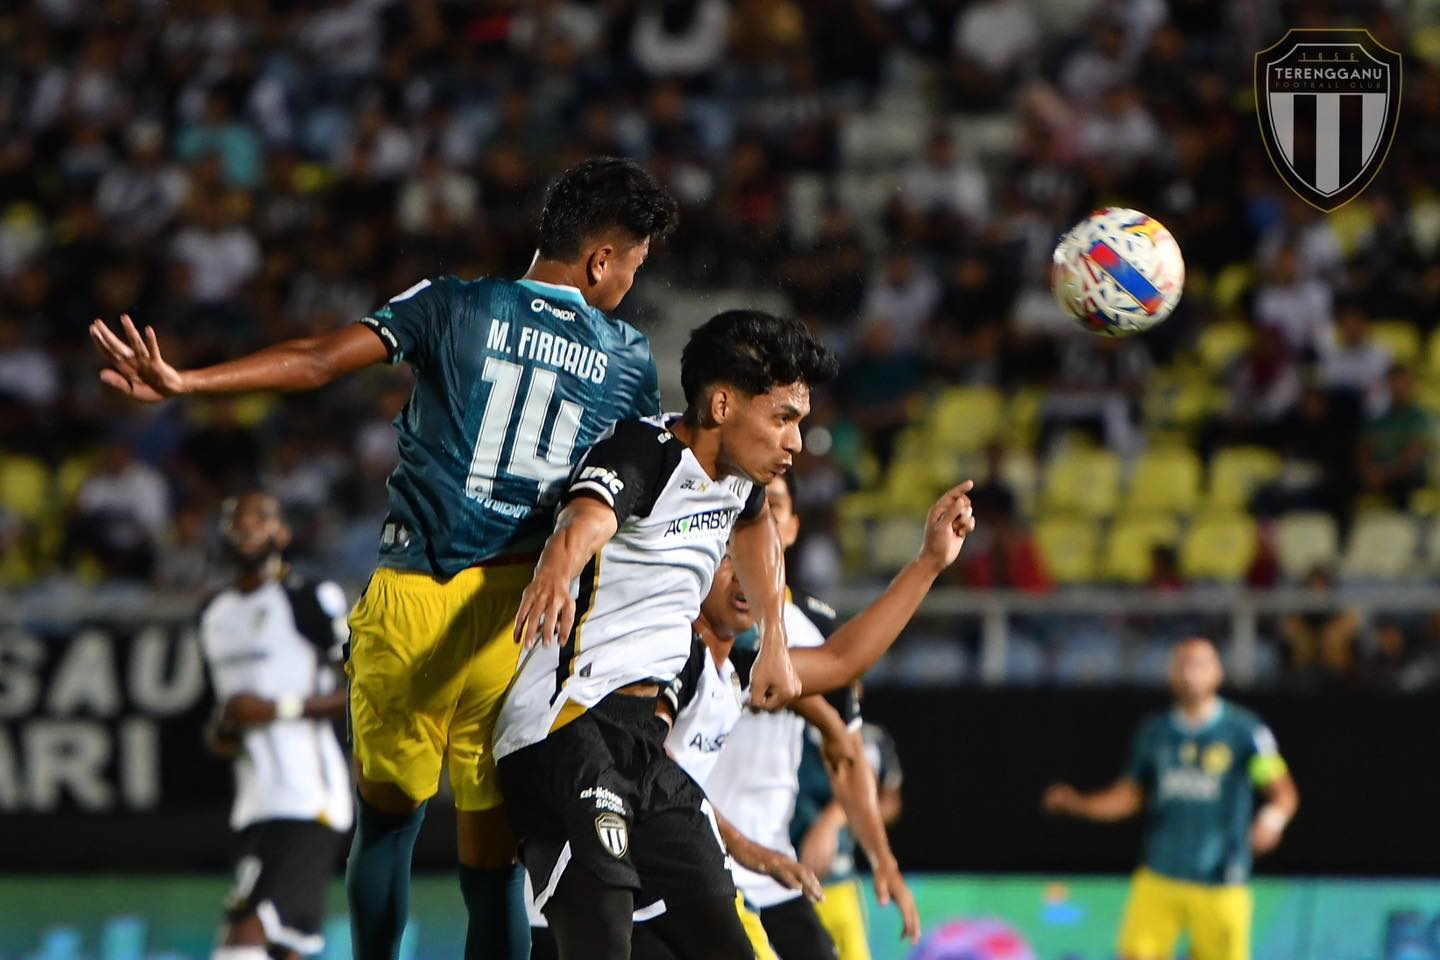 Terengganu langkah kanan, Syafiq Ahmad jaring gol terpantas di Selayang